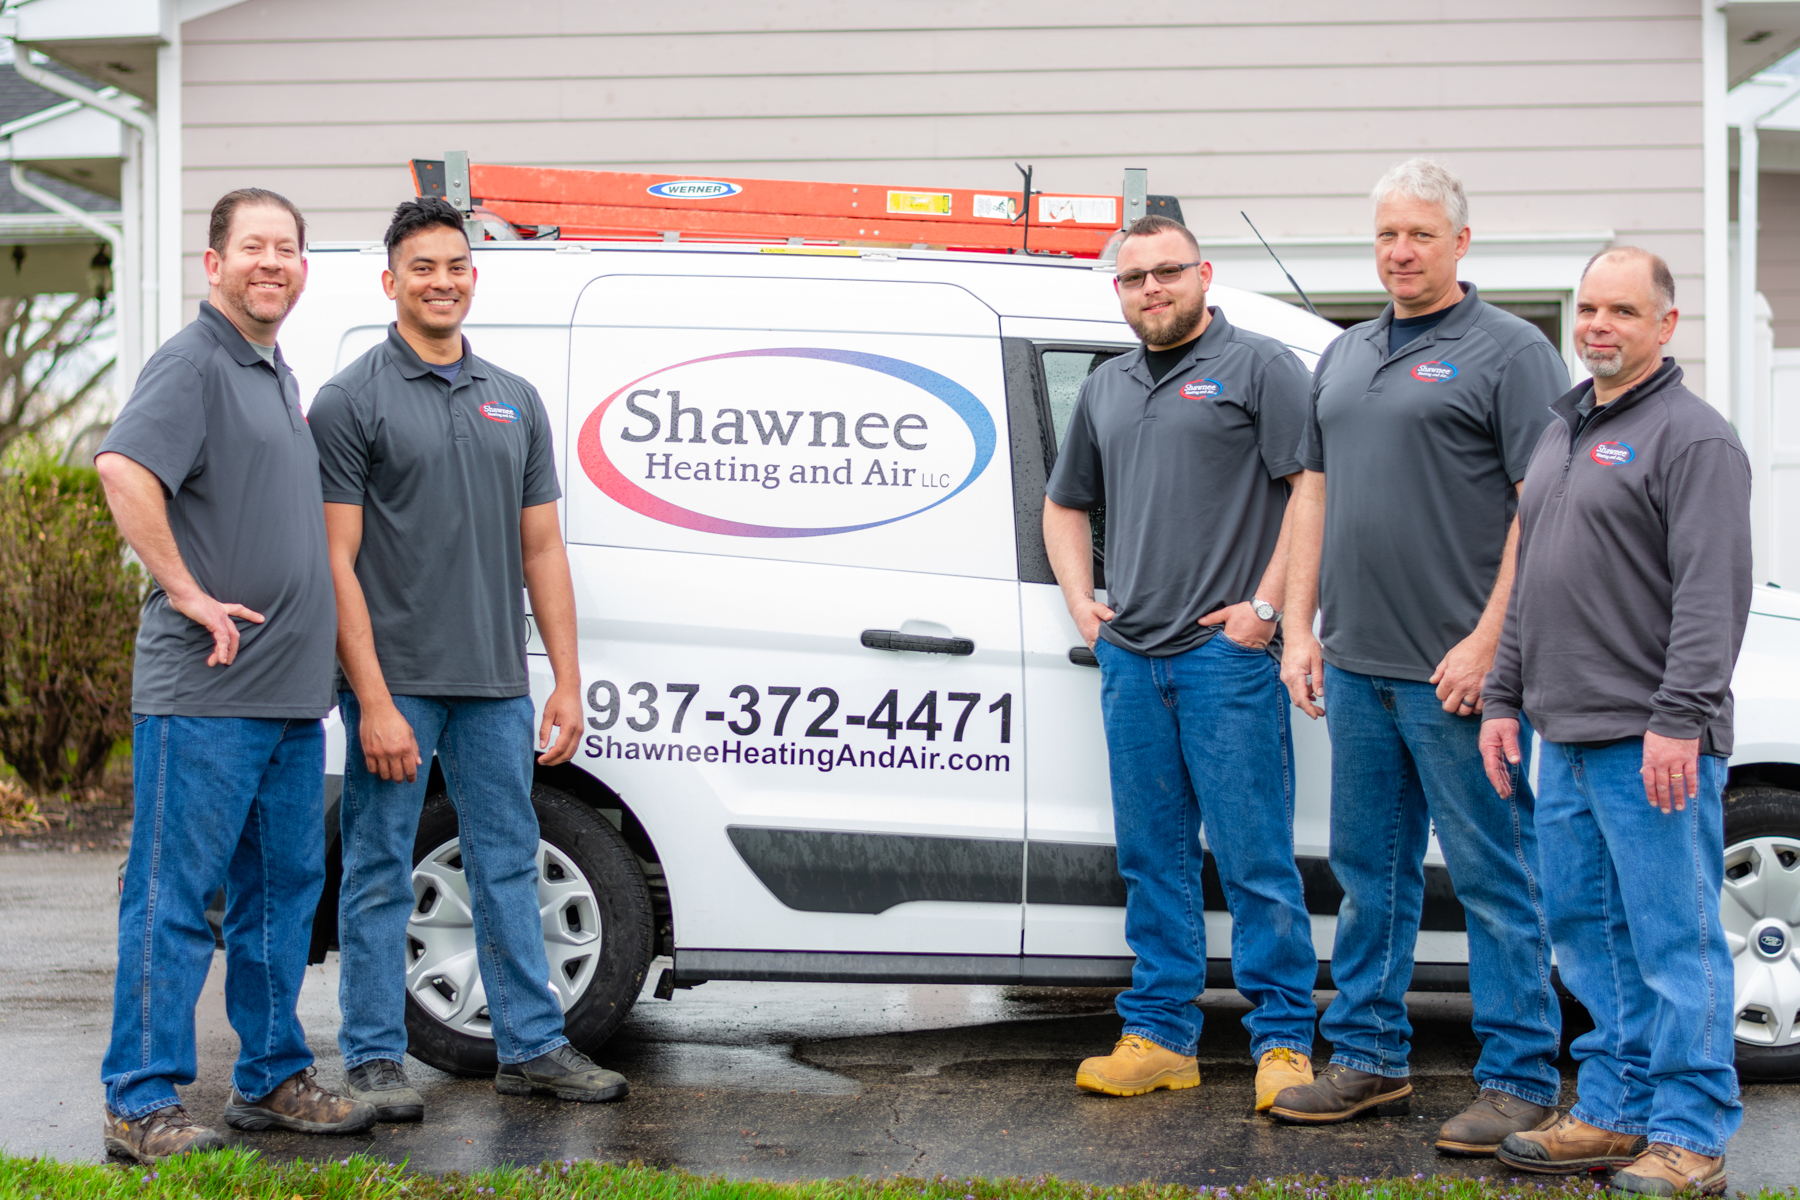 Shawnee Heating and Air, LLC